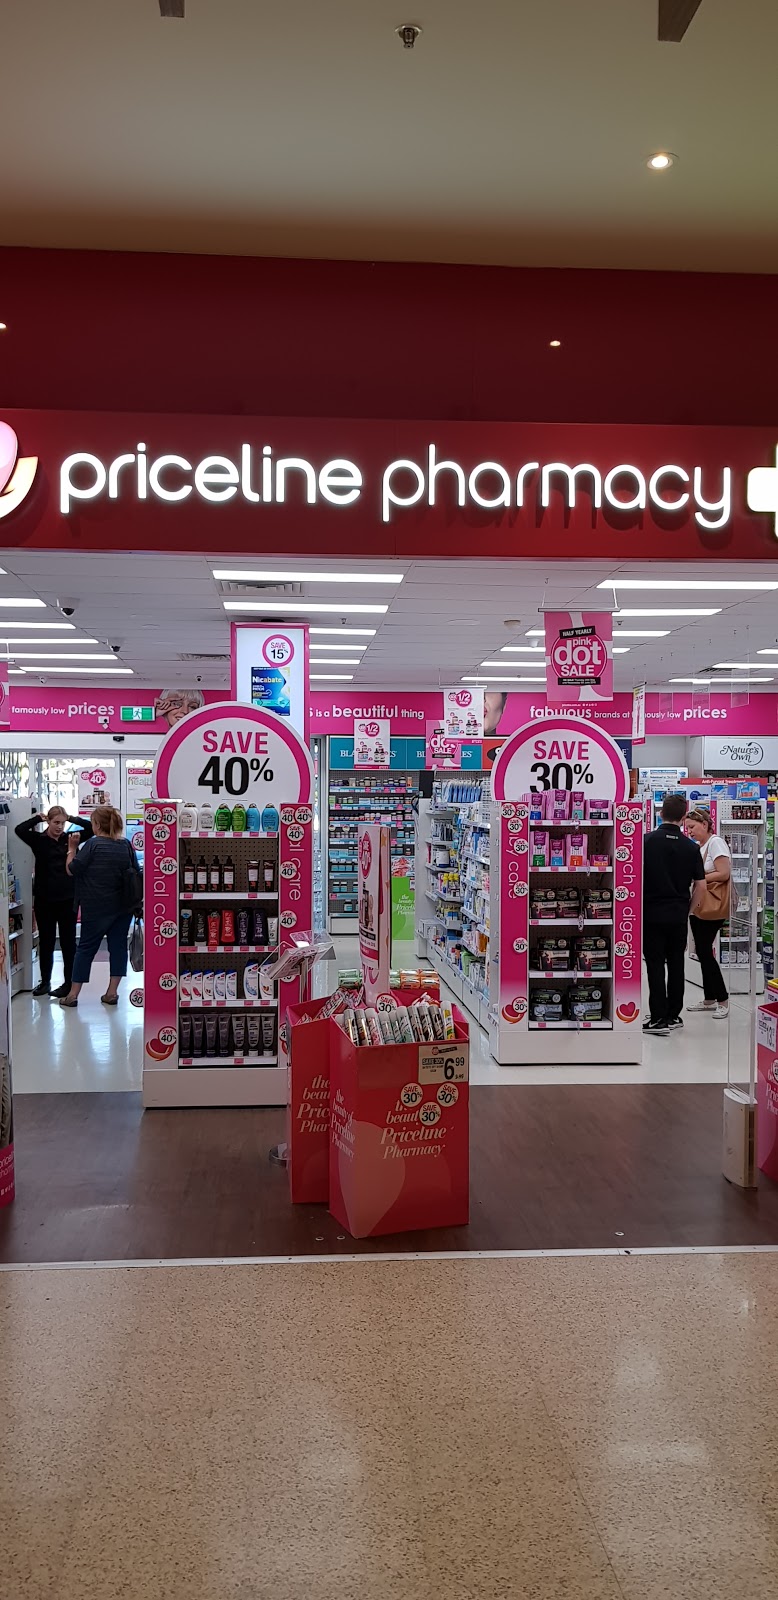 Priceline Pharmacy Kincumber | pharmacy | Kincumber Shopping Village, 4 Avoca Dr, Kincumber NSW 2251, Australia | 0243696900 OR +61 2 4369 6900